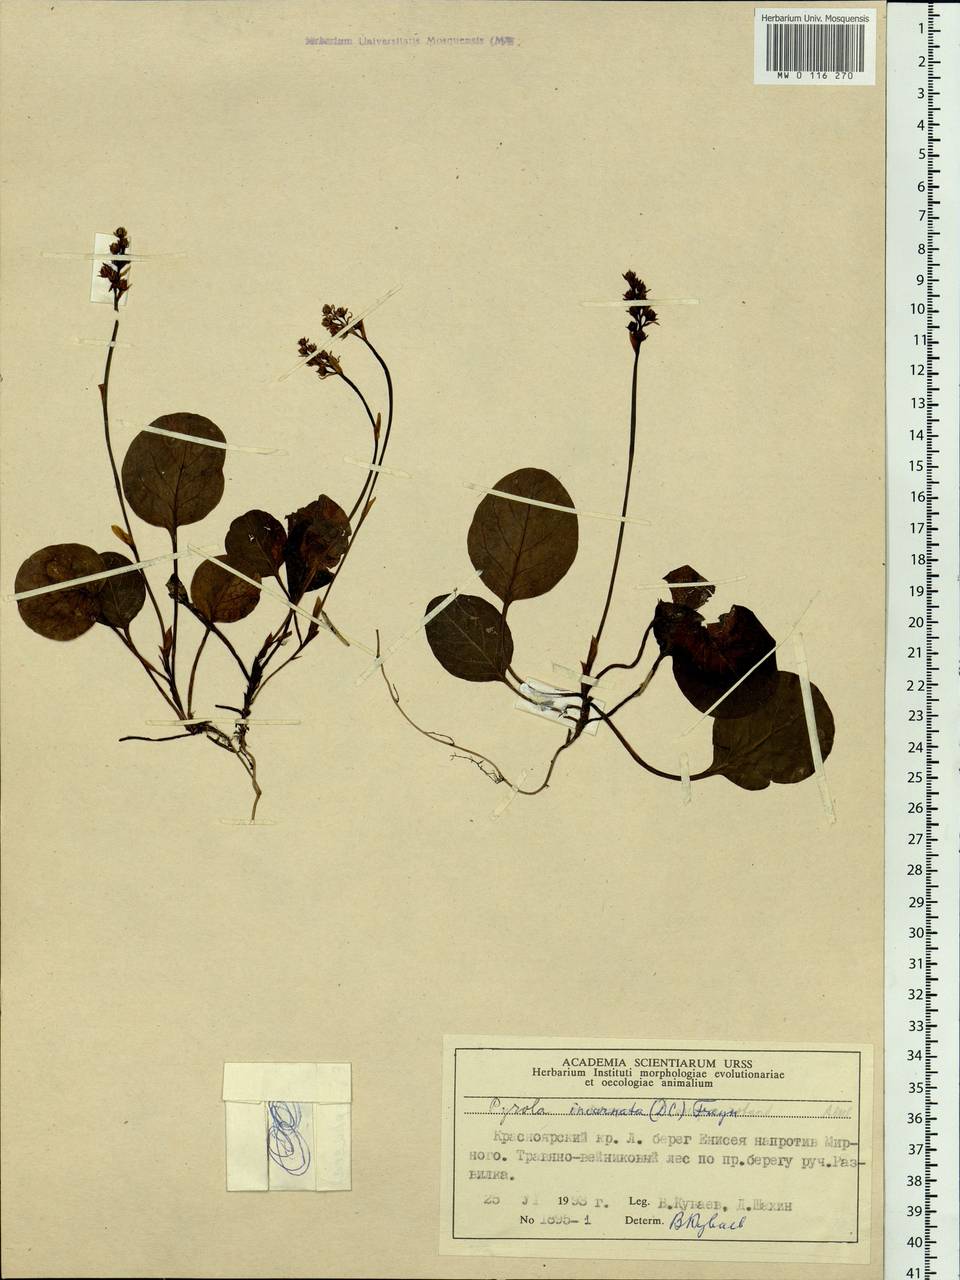 Pyrola asarifolia subsp. incarnata (DC.) A. E. Murray, Siberia, Central Siberia (S3) (Russia)